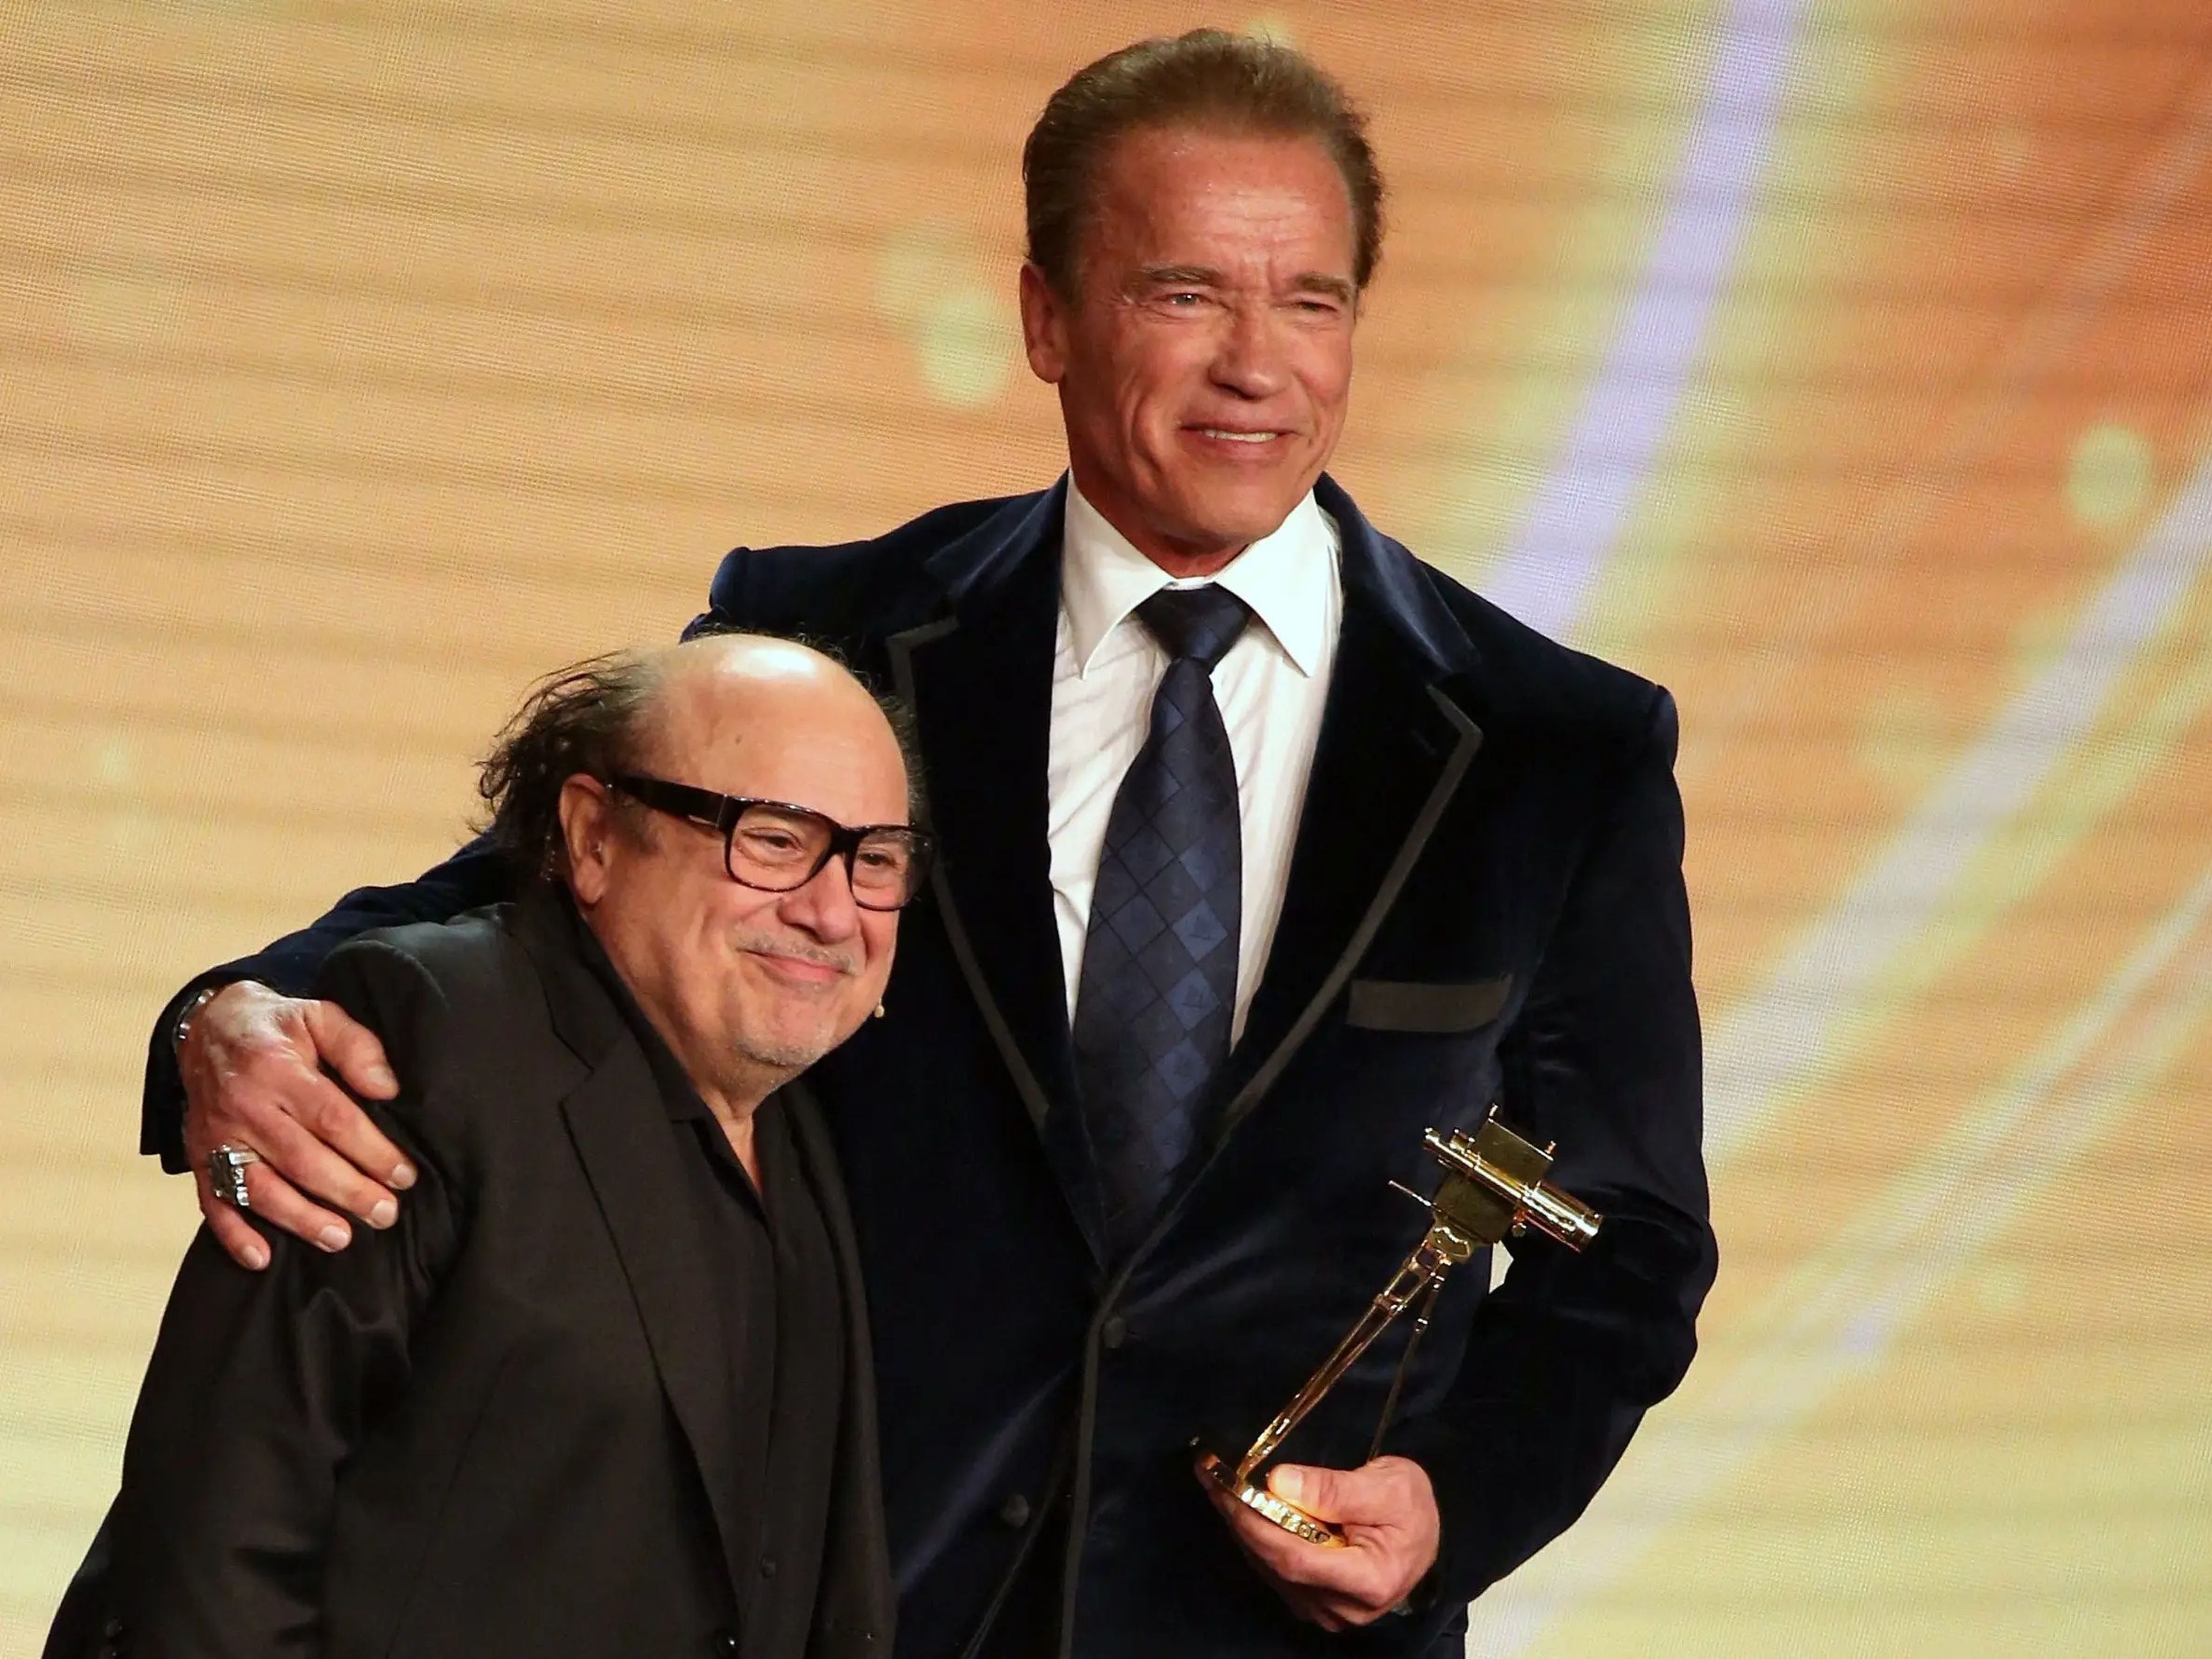 El austriaco Arnold Schwarzenegger, de 1,90 m de estatura, actuó junto a Danny DeVito, mucho más bajo, en la película de los 80 'Twins' ('Los gemelos golpean dos veces', en España).